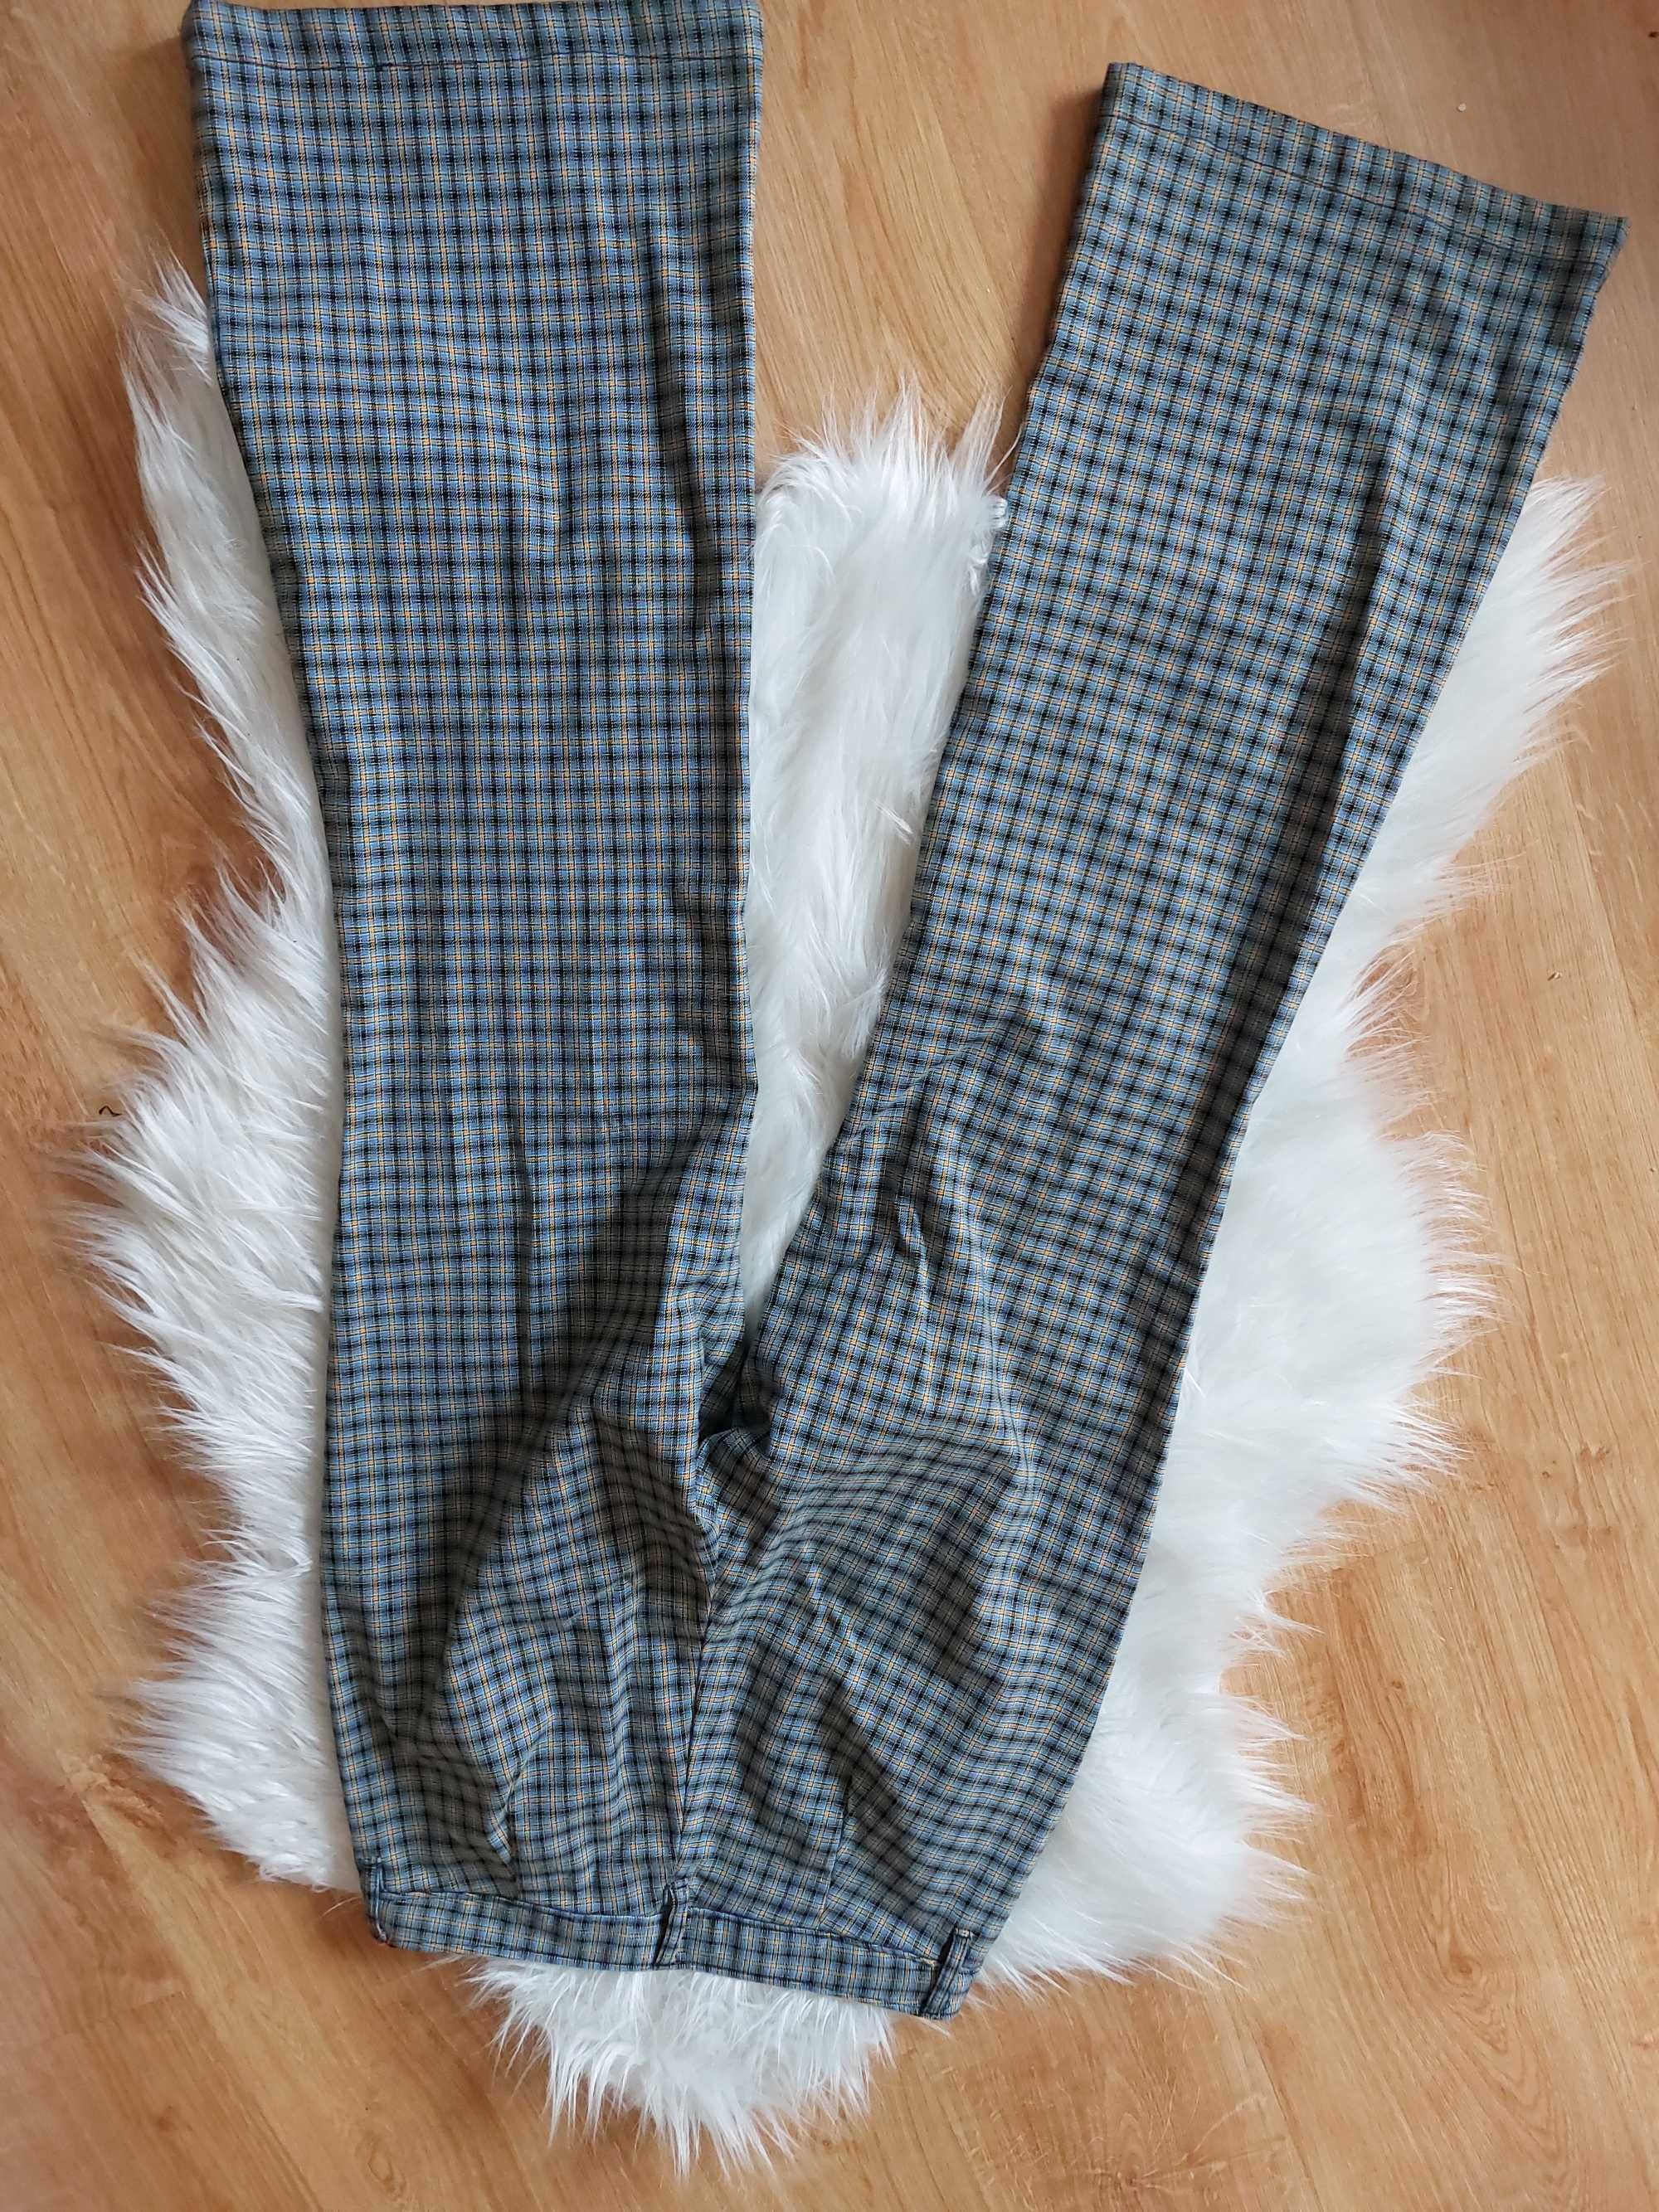 unikatowe spodnie w kratkę kolorowe s m dzwony szeroka nogawka flare